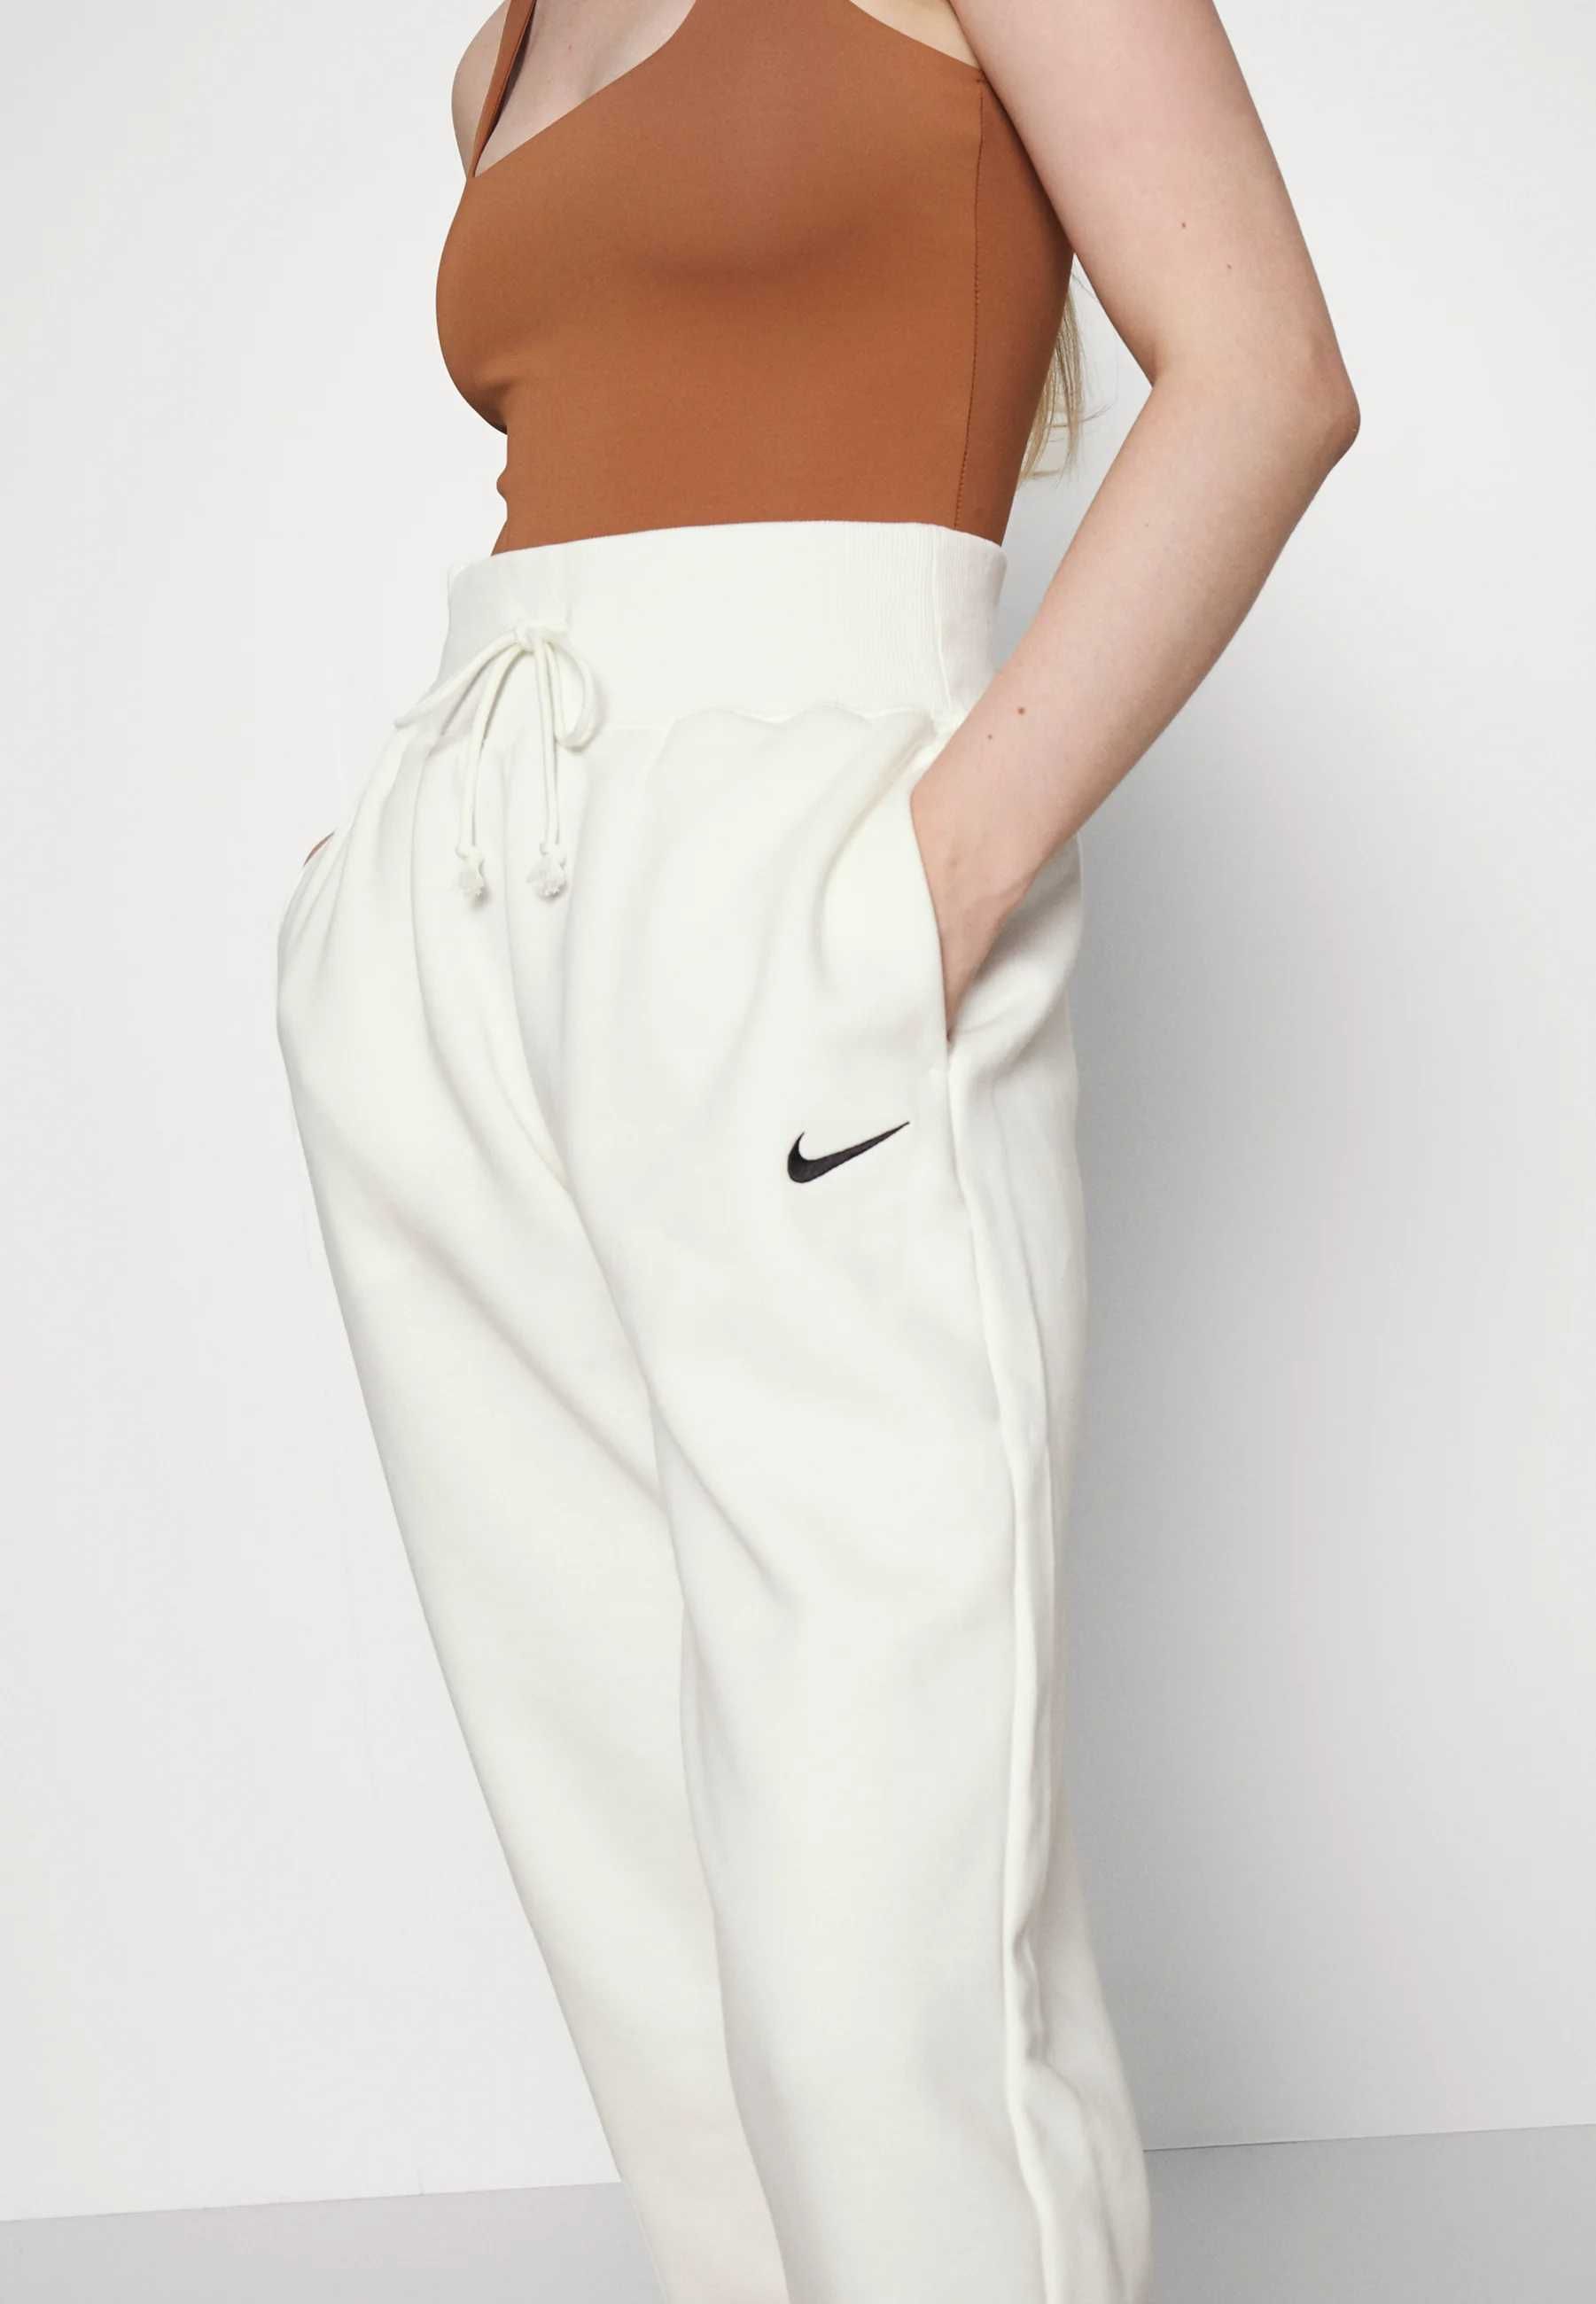 Nike spodnie dresowe damskie białe ecri 38 m joggery szerokie ;l